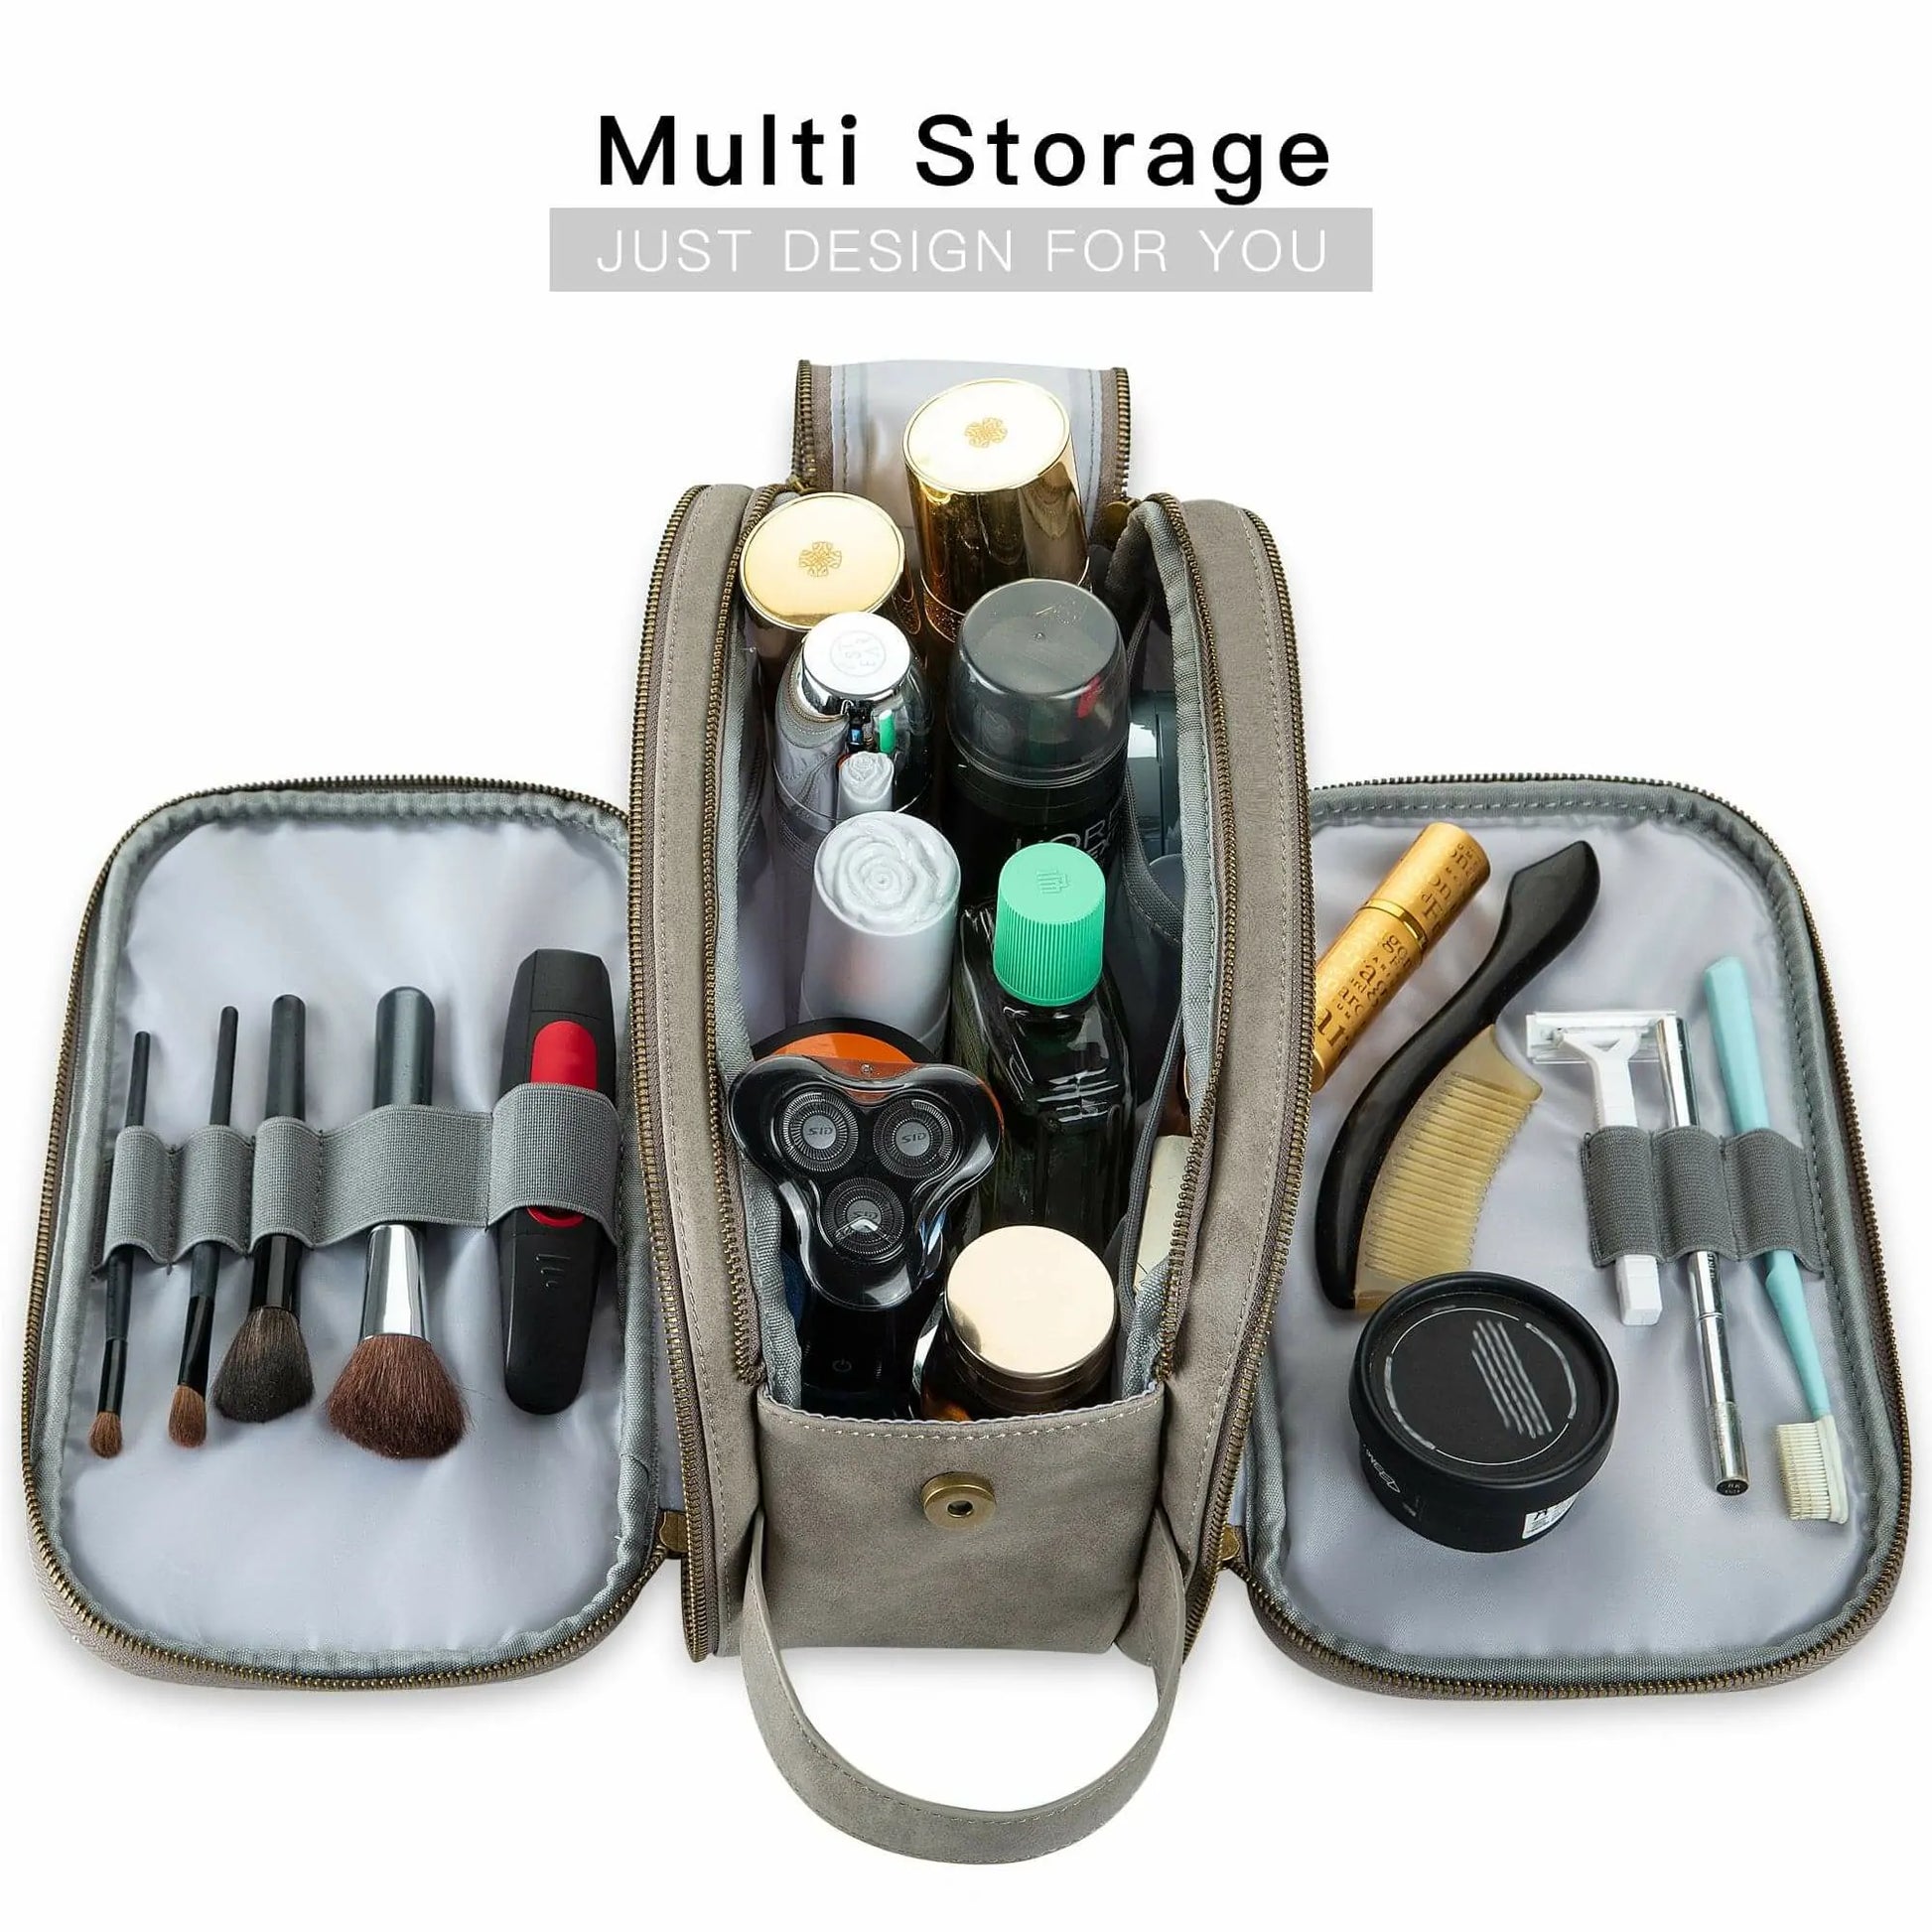 emissary Travel Toiletry Bag for Men, Leather and Canvas Toiletry Bags,  Dopp Kit for Men, Travel Bathroom Bag Men's Shaving Kit, Travel Kit Small  Bag